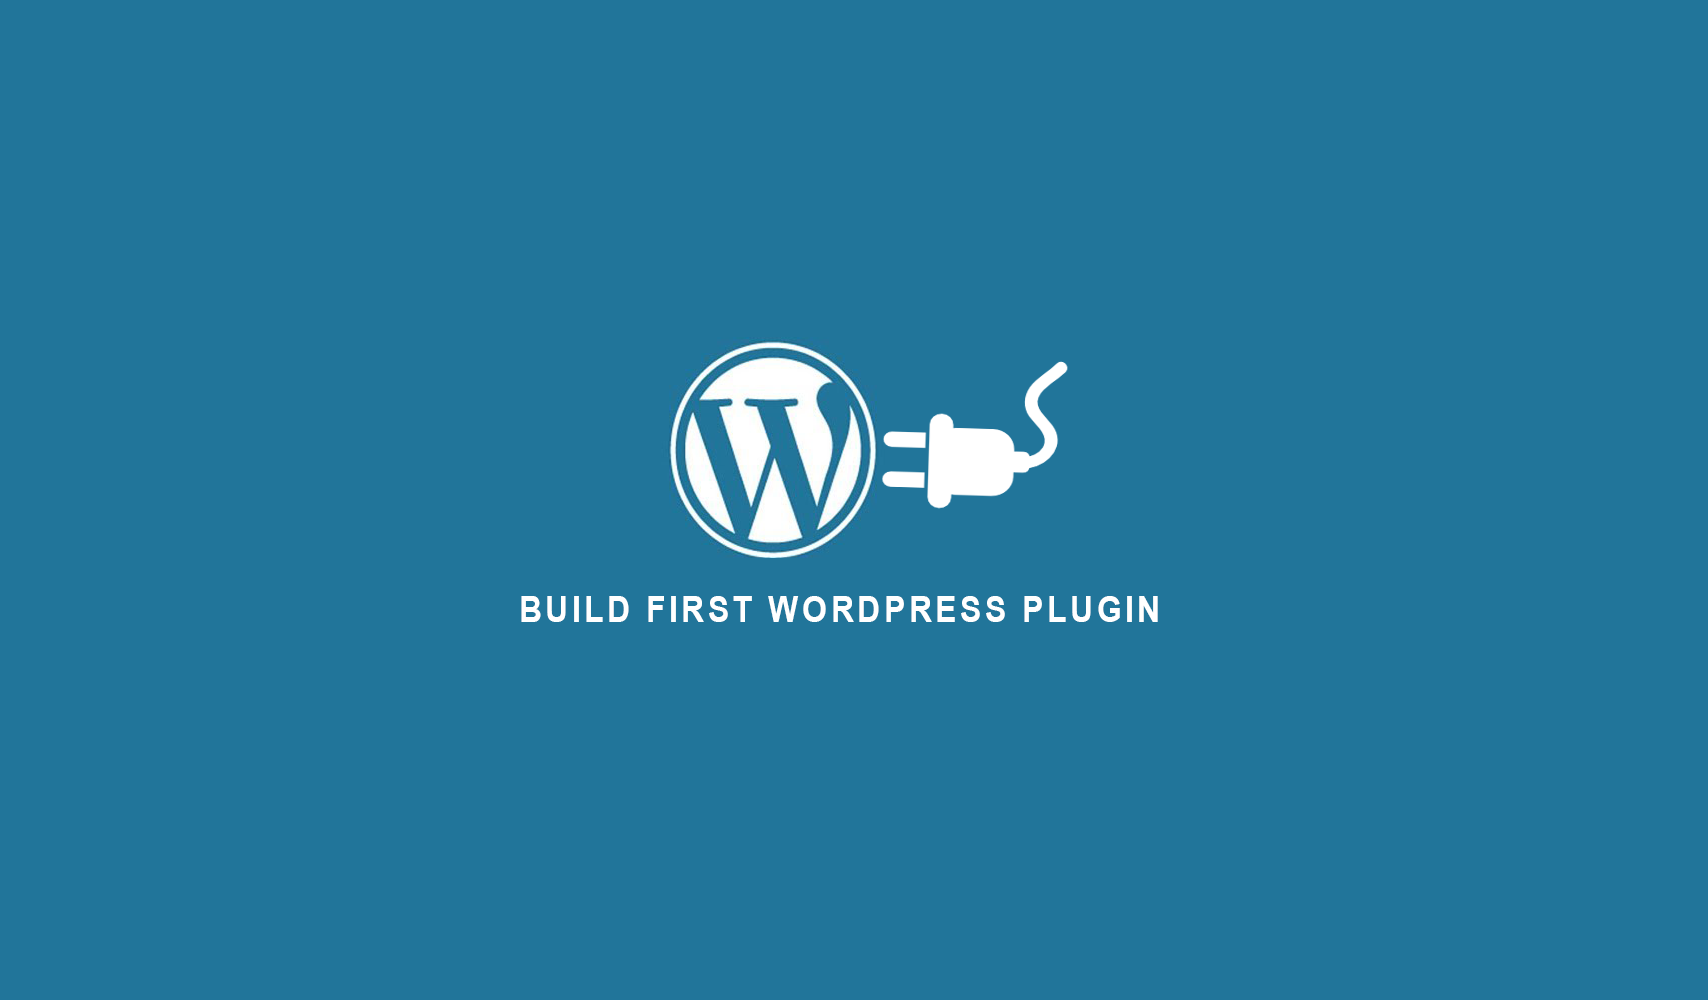 Пишем плагин-виджет для Wordpress и публикуем в репозитории